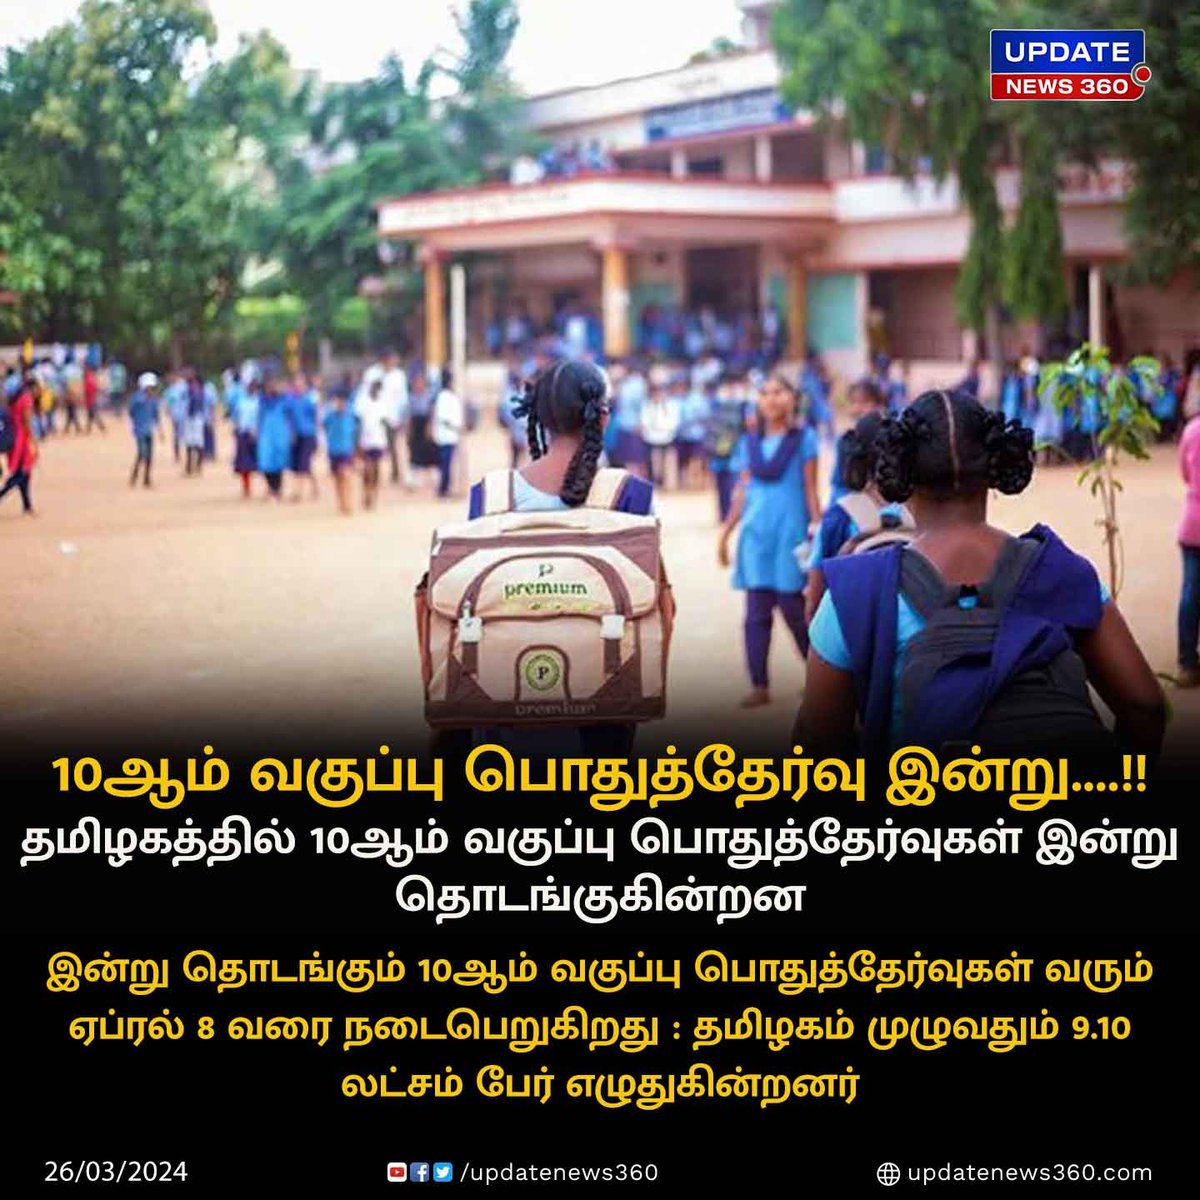 தமிழகத்தில் இன்று 10ஆம் வகுப்பு பொதுத்தேர்வுகள் தொடங்குகின்றன..!!
 
#UpdateNews | #TamilNadu | #10thexam | #PublicExam | #Students | #SchoolEducation | #TamilNews | #UpdateNews360